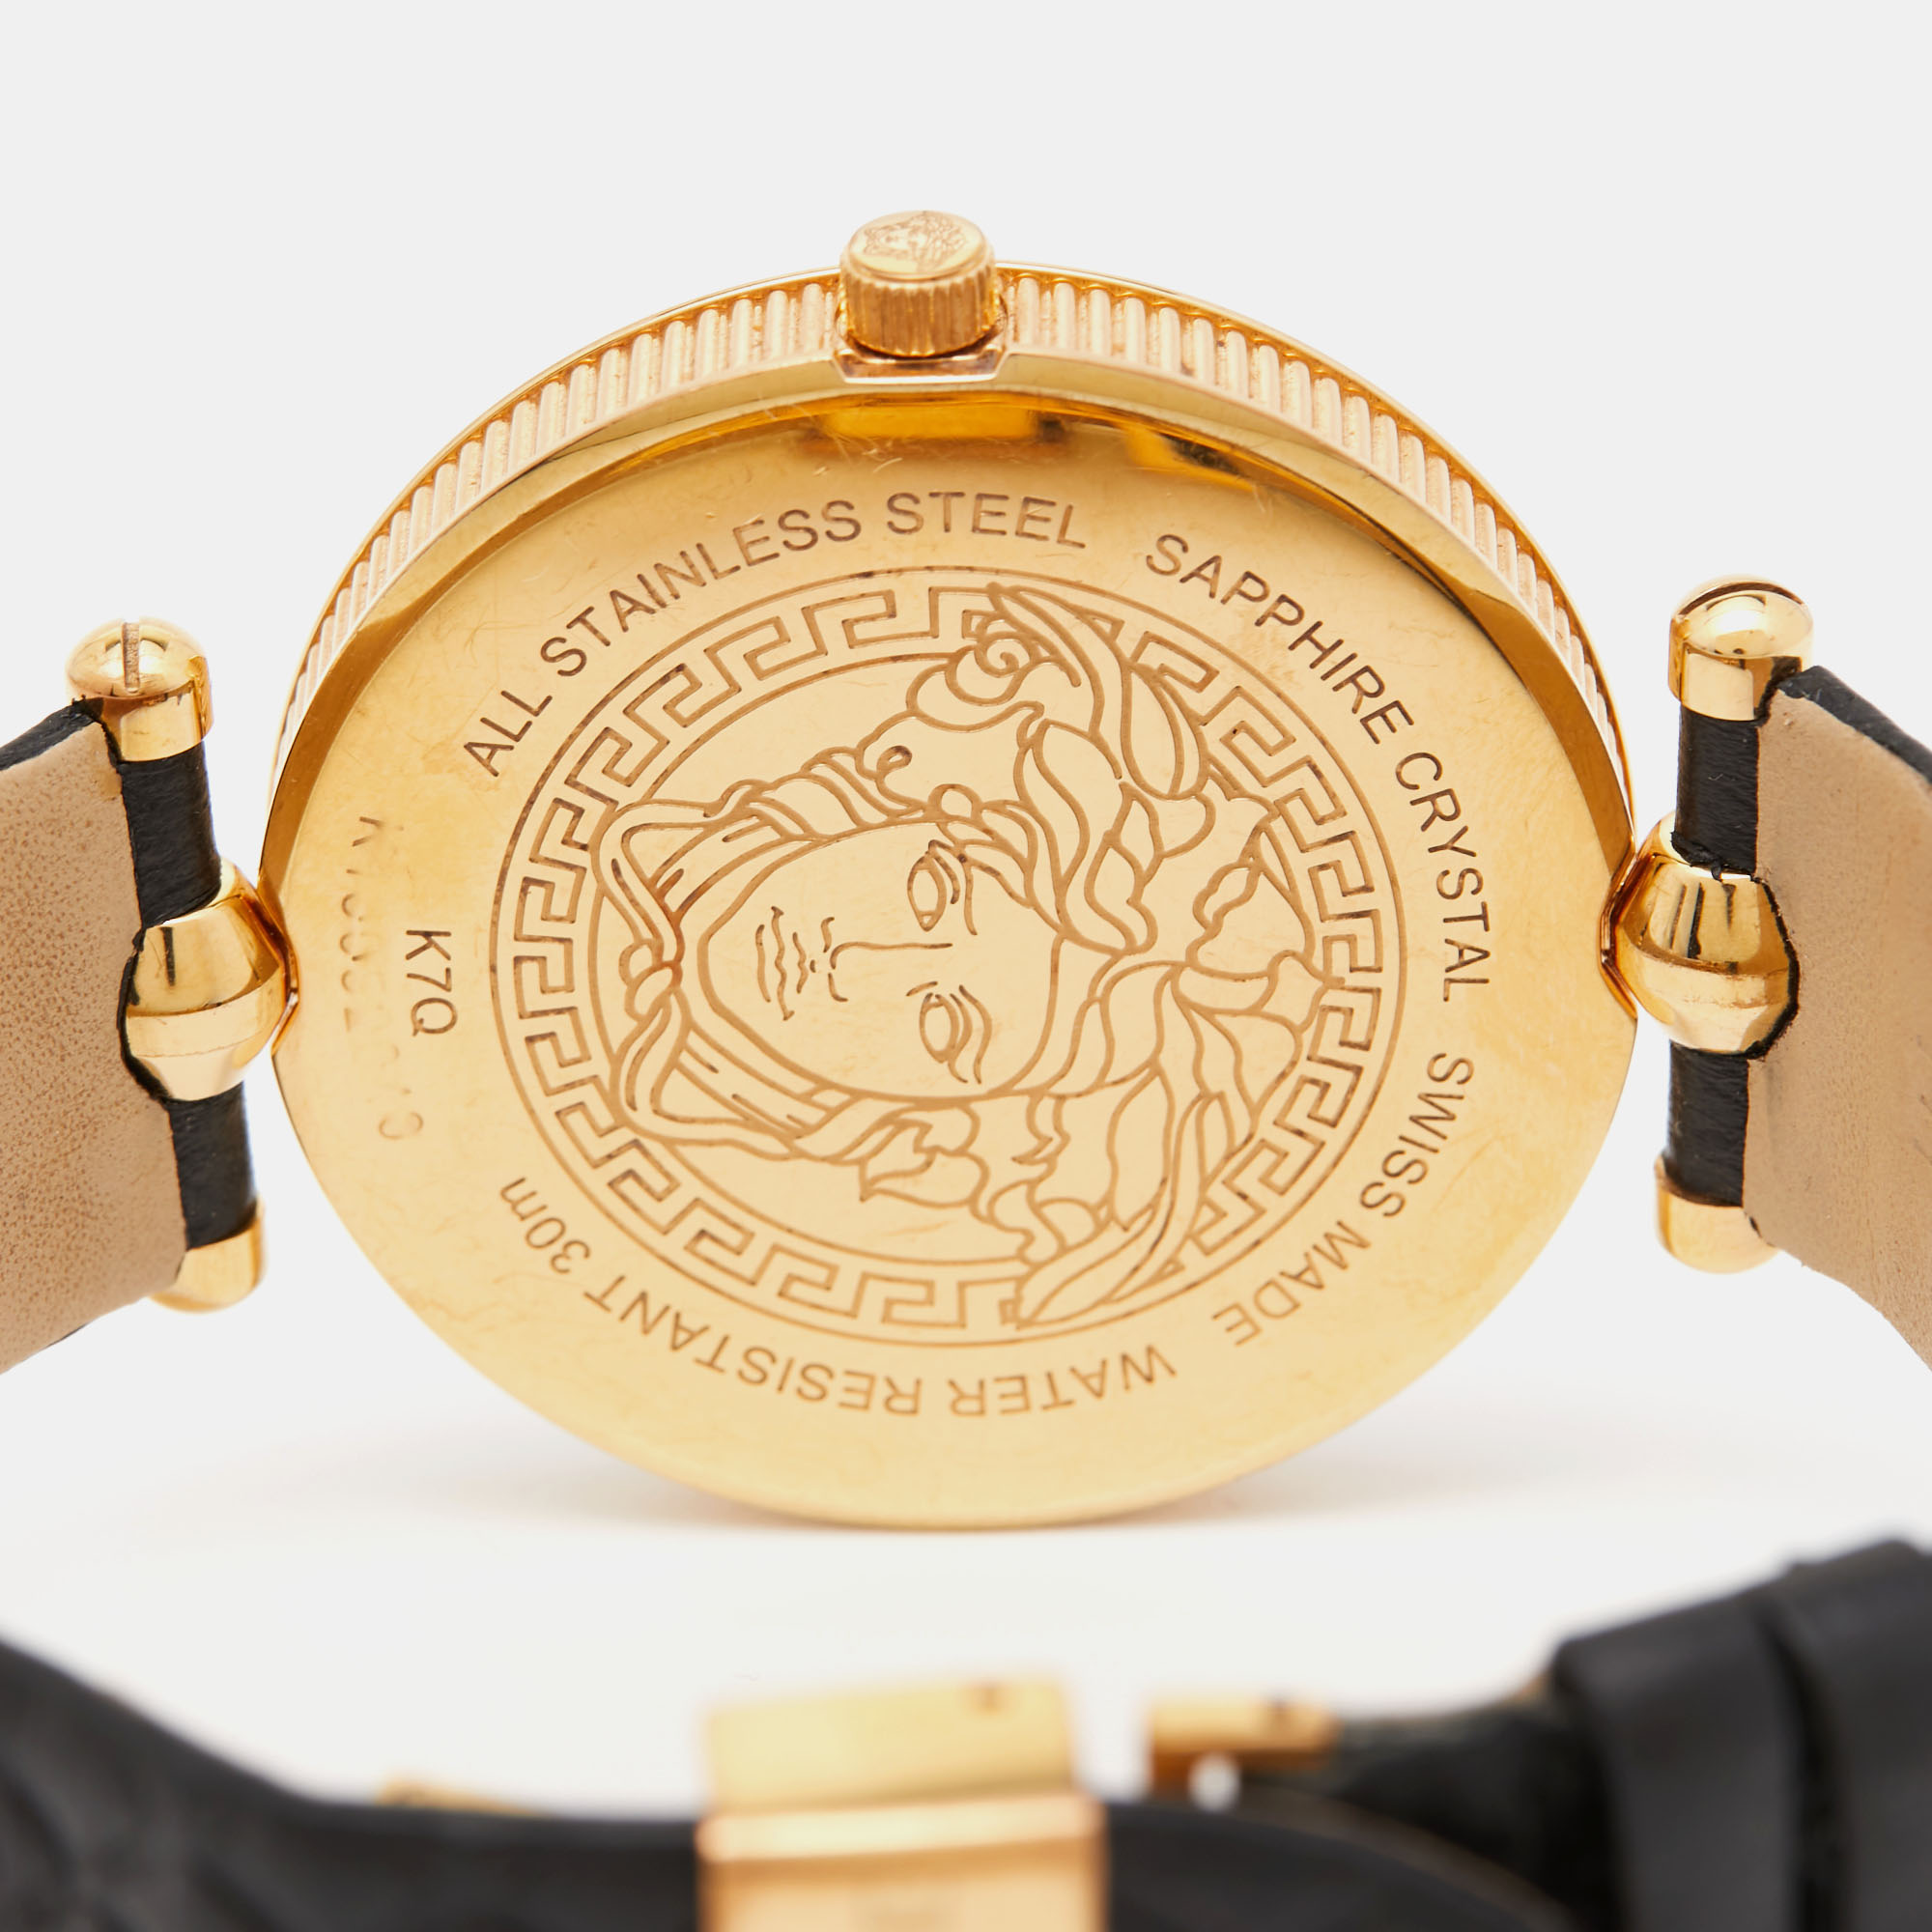 Versace Black PVD Coated Stainless Steel Embossed Leather Vanitas K7Q Women's Wristwatch 40 Mm